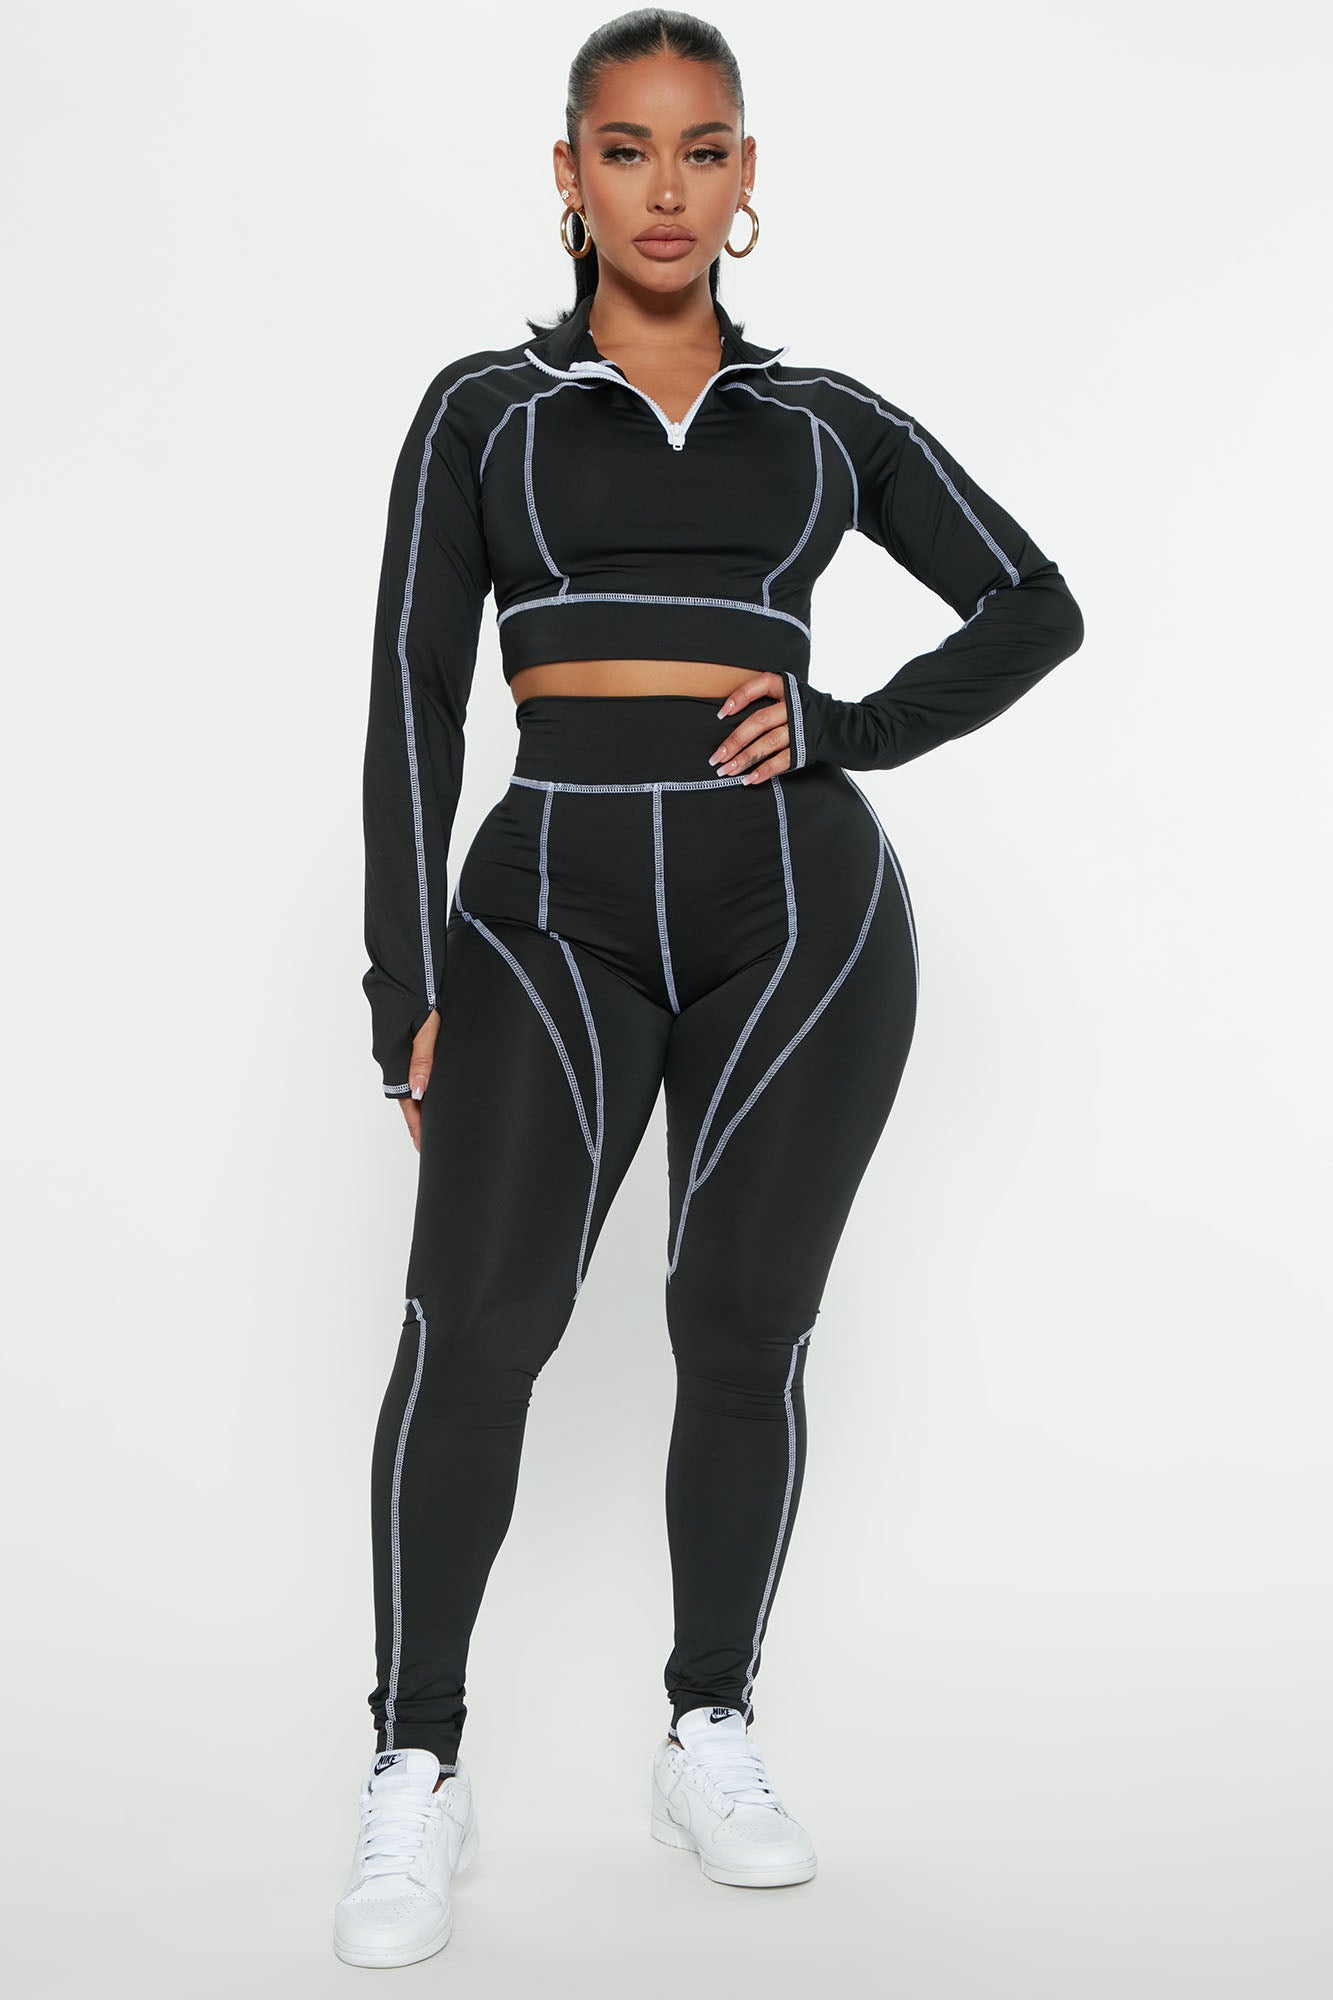 Right This Matching Set Nova, | Nova Fashion Fashion Sets - Black Way | Legging